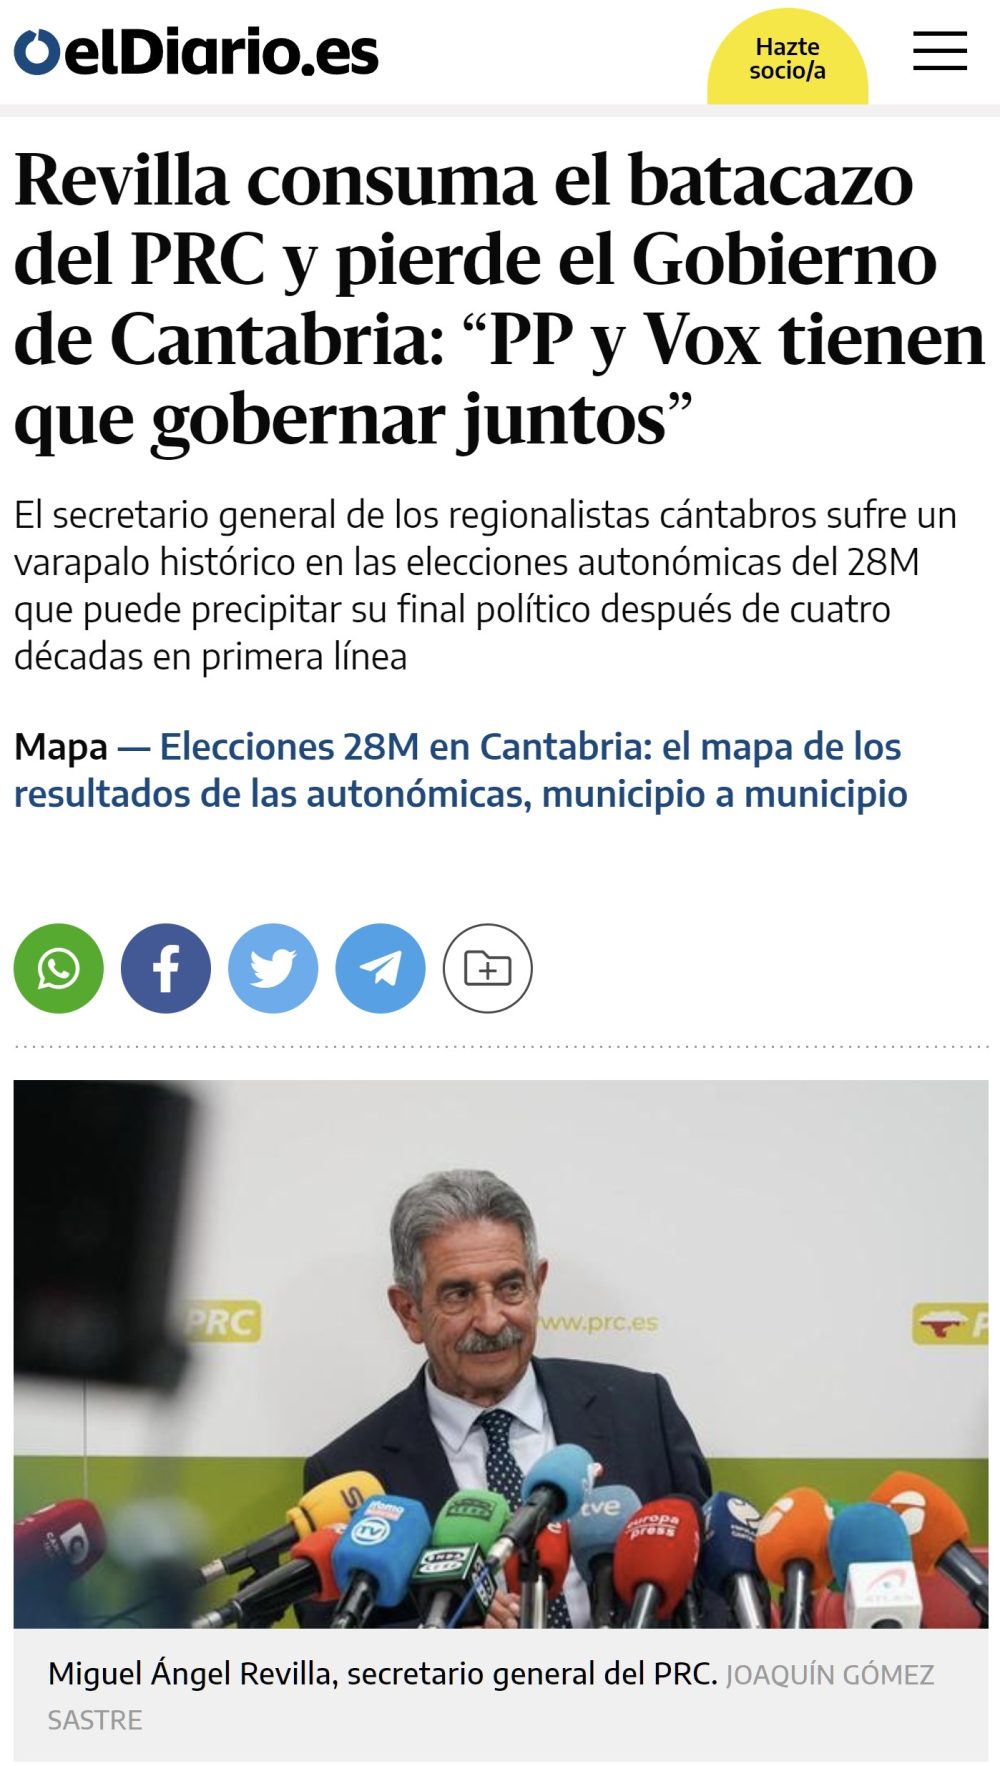 Revilla pierde el gobierno de Cantabria.